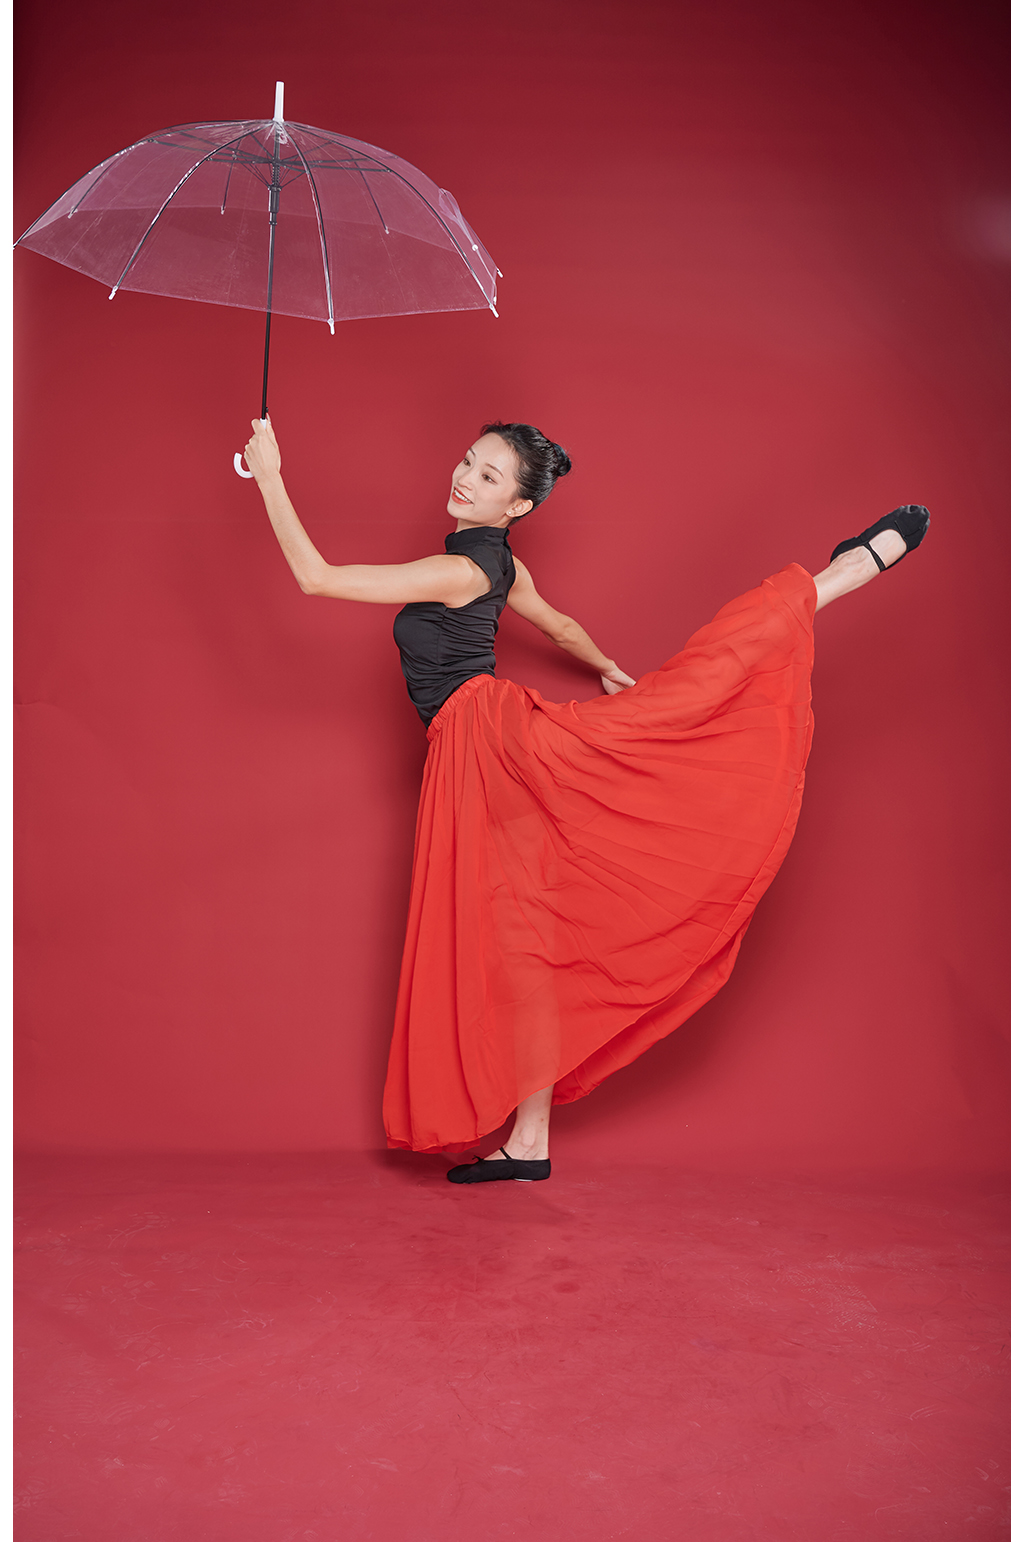 拿伞的舞蹈造型图片图片